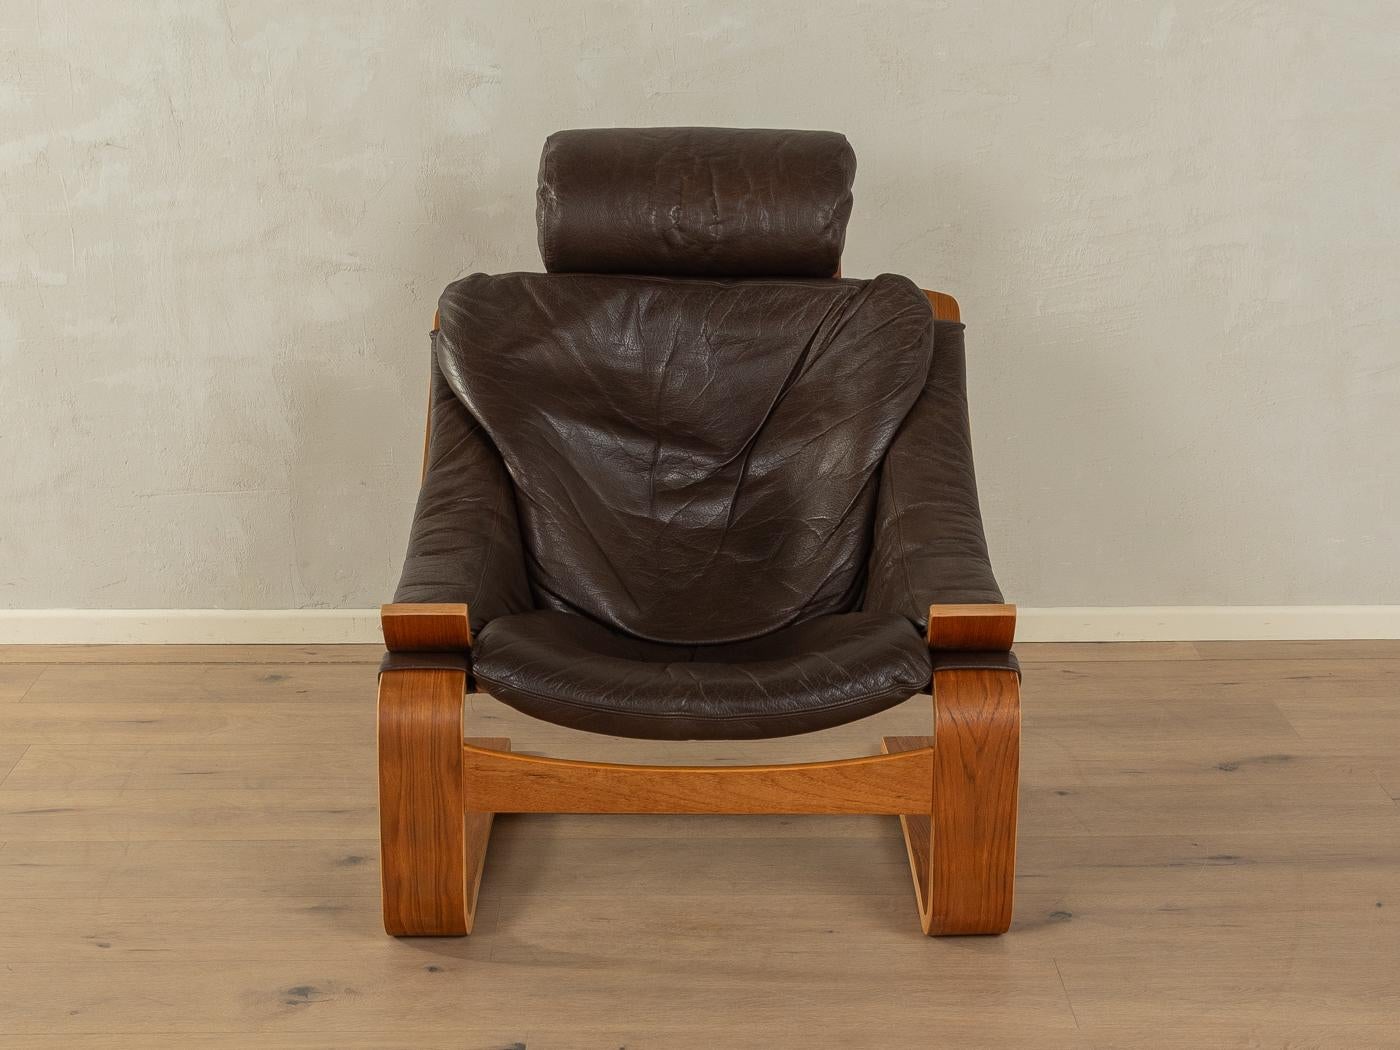 KROKEN Sessel mit Fußhocker von Ake Fribytter für NELO aus den 1970er Jahren. Hochwertiger Massivholzrahmen aus Eichenbugholz  in Teakholzfurnier mit dem hochwertigen Originalbezug aus dunkelbraunem Leder.
Qualitätsmerkmale:

    vollendetes Design: